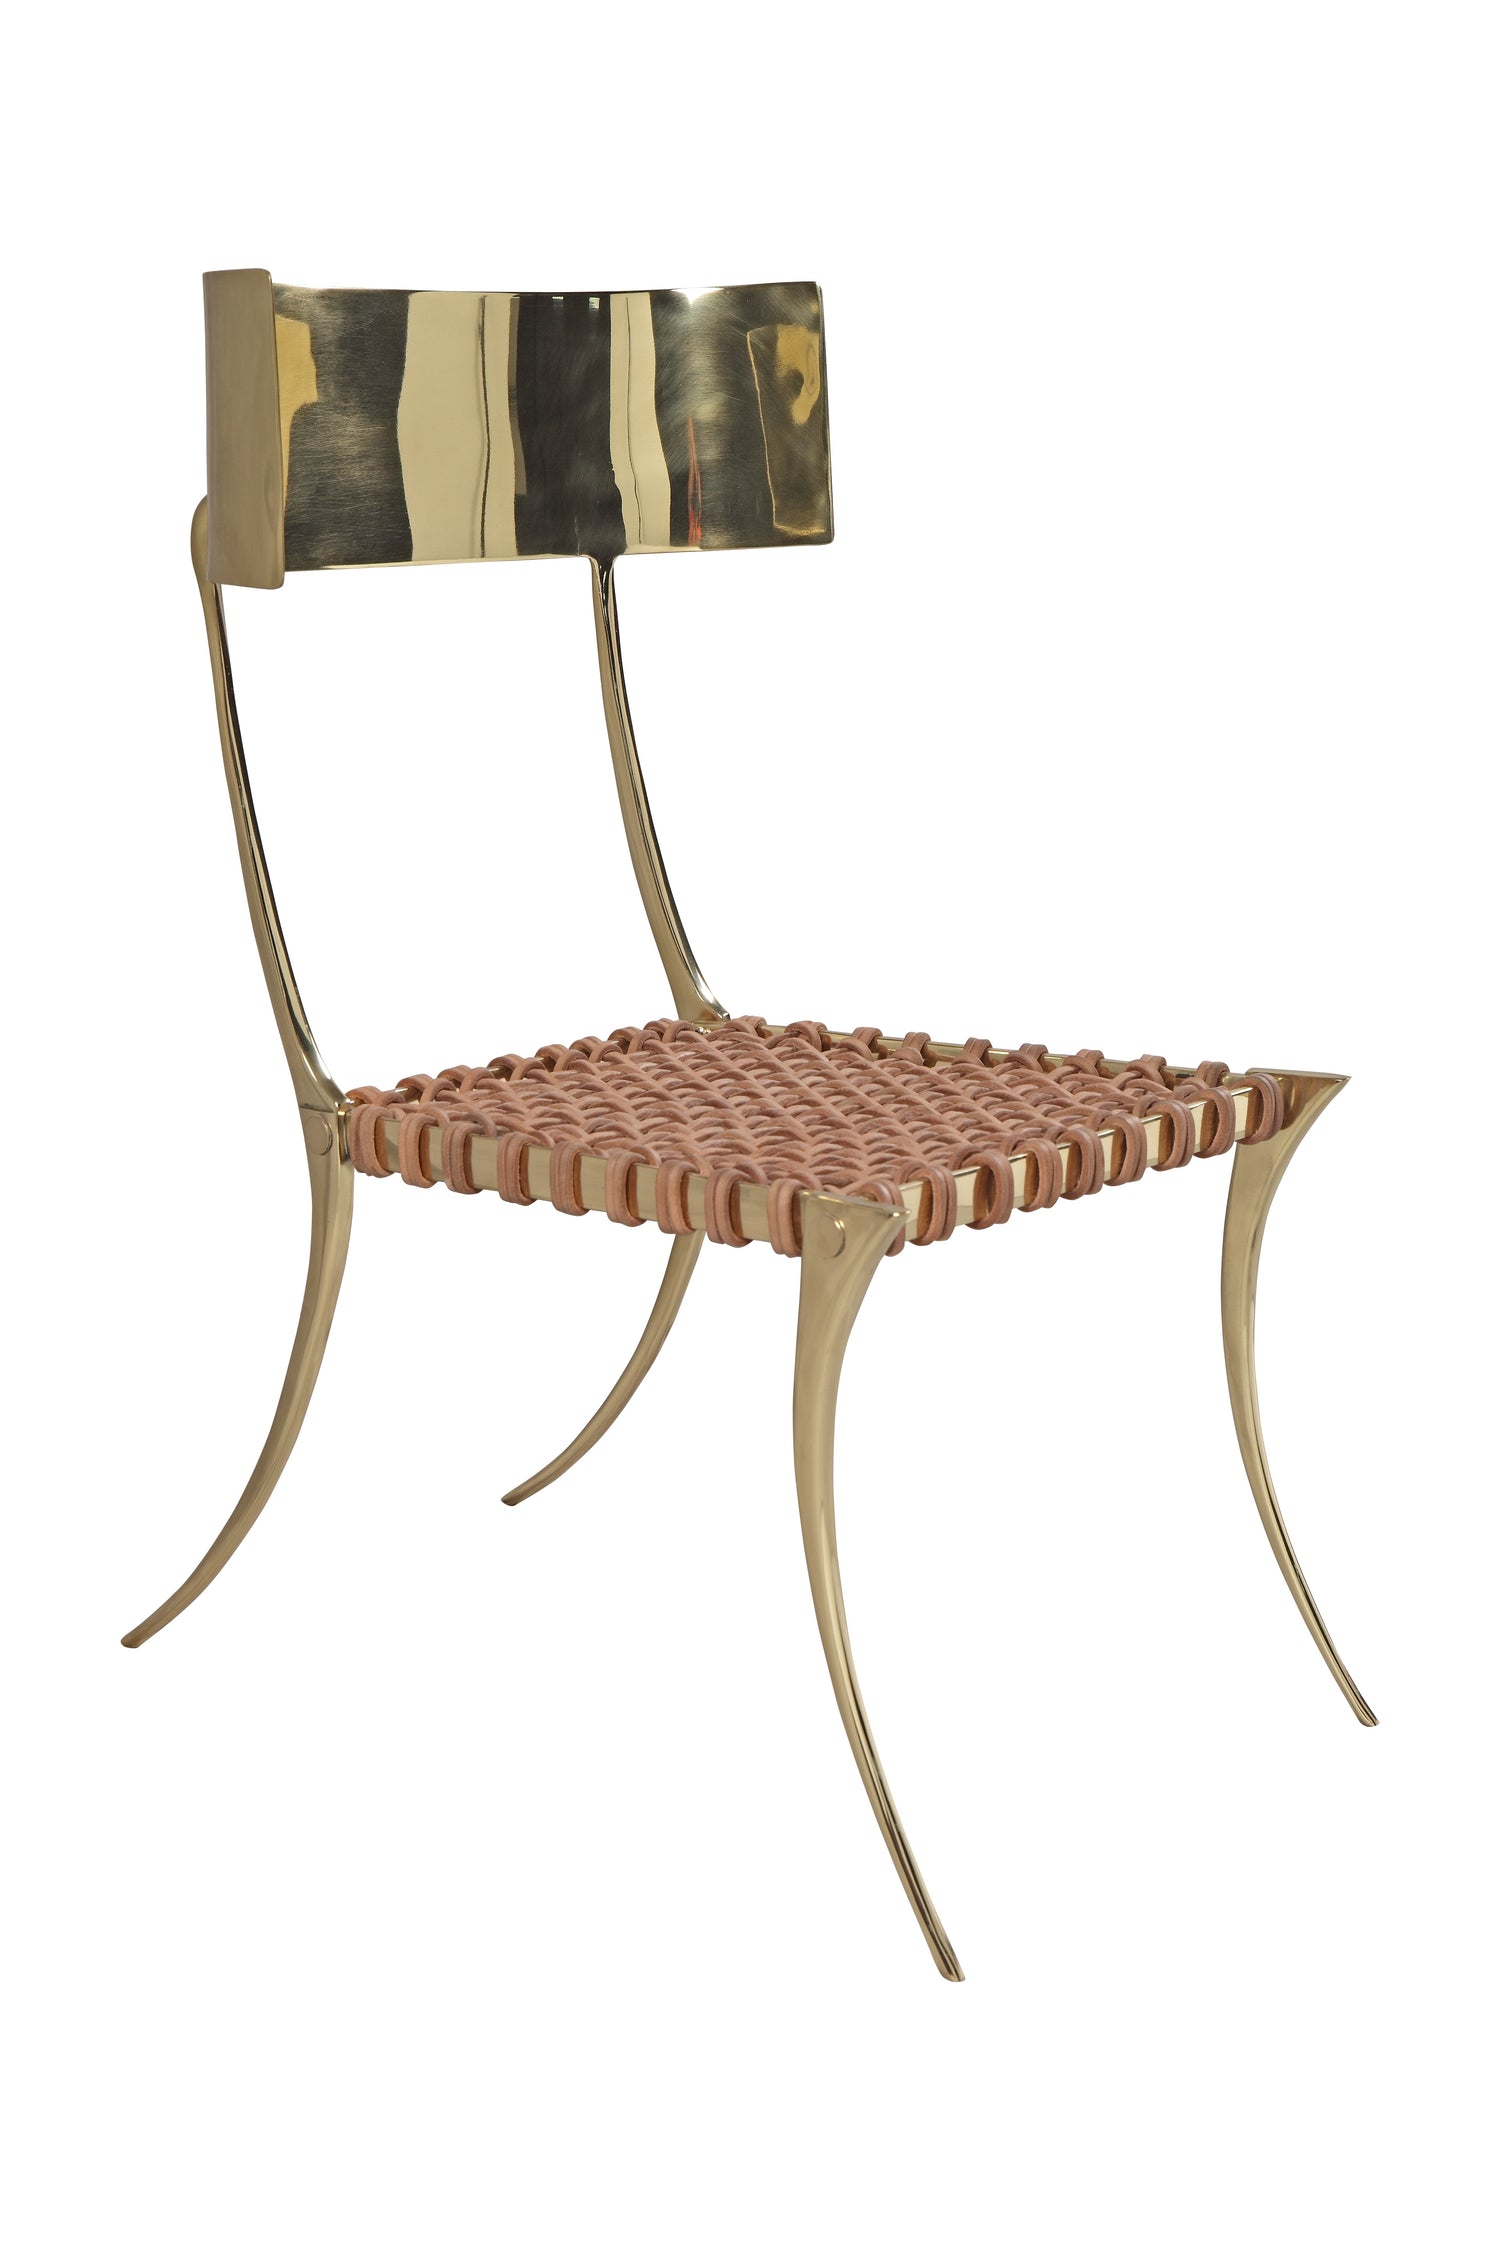 Brass Klismos Chair (Lite)